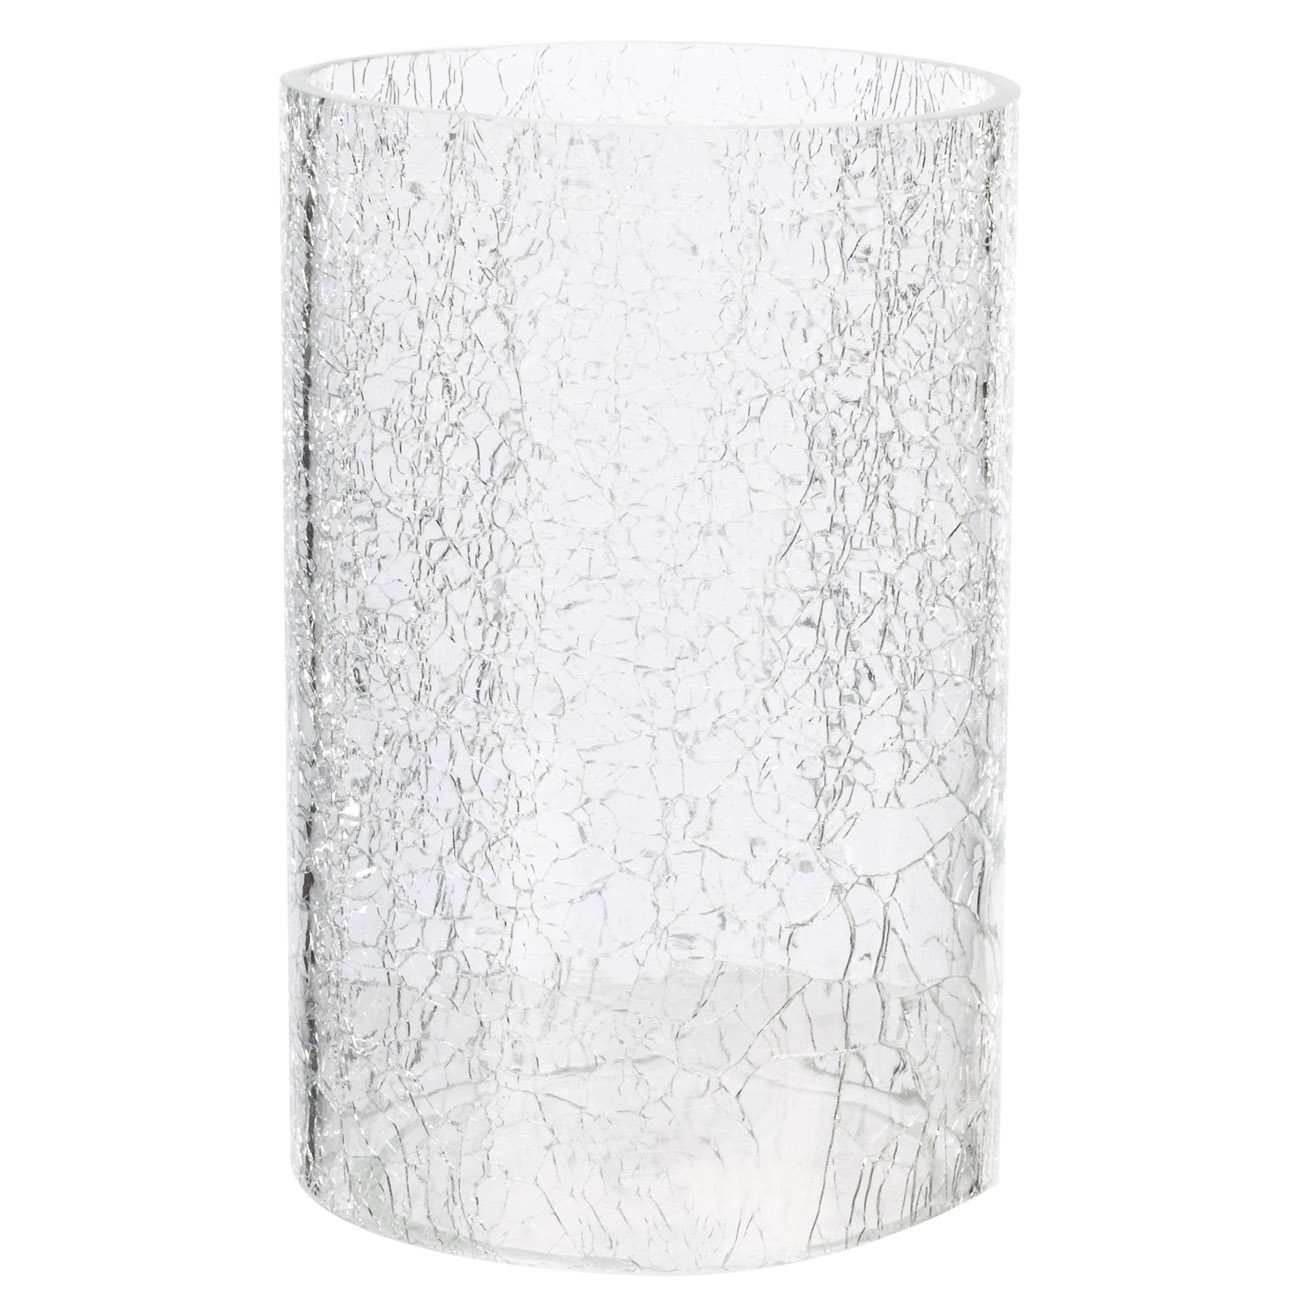 Подсвечник, 32 см, для одной свечи, на ножке, стекло/металл, серебристый, Кракелюр, Fantastic Ice